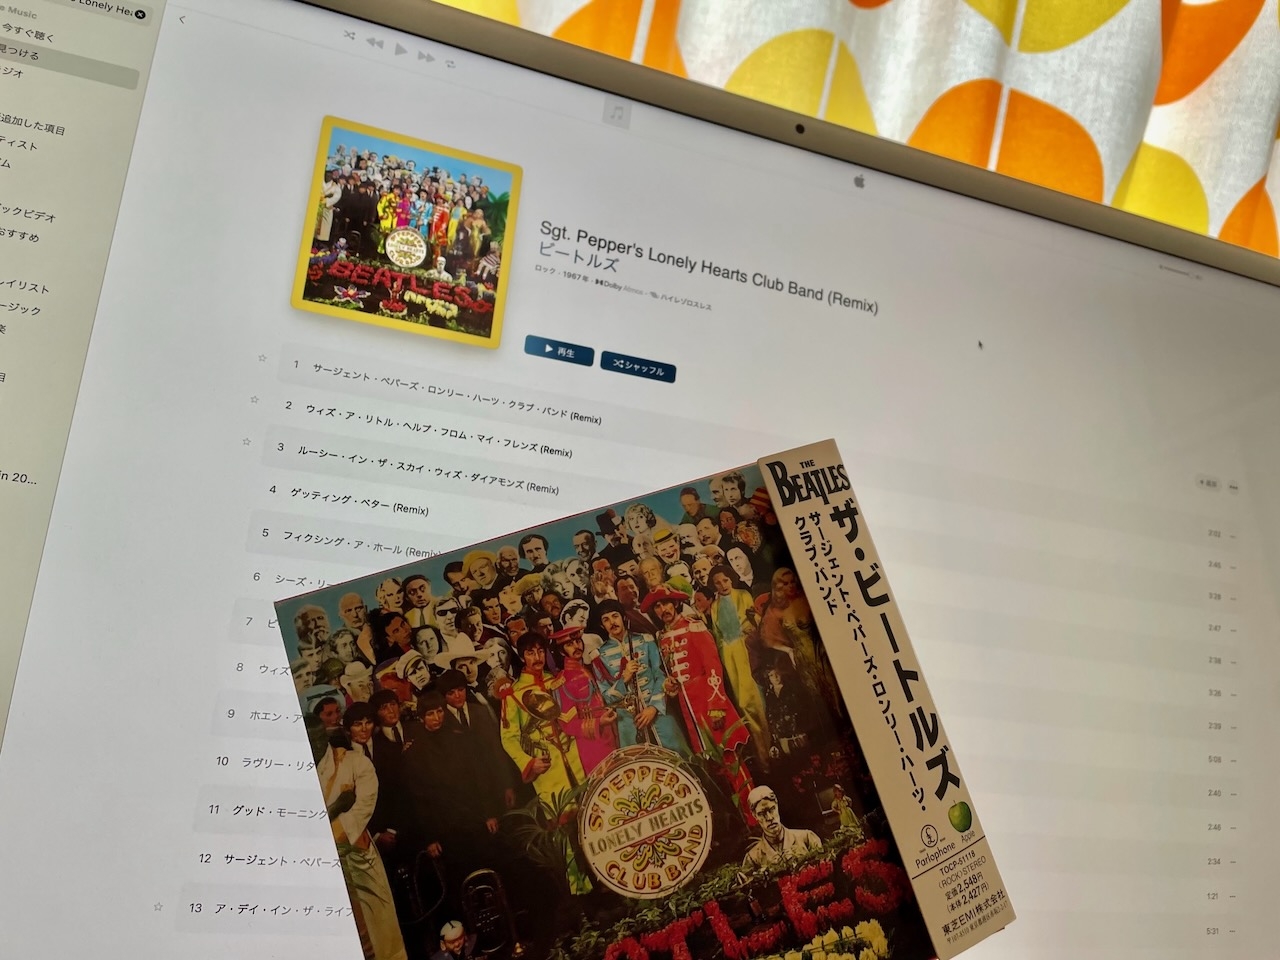 長谷川和芳 | 転がる石のように名盤100枚斬り　第100回 #1 Sgt. Pepper’s Lonely Hearts Club Band (1967) - THE BEATLES 『サージェント・ペパーズ・ロンリー・ハーツ・クラブ・バンド』- ザ・ビートルズ